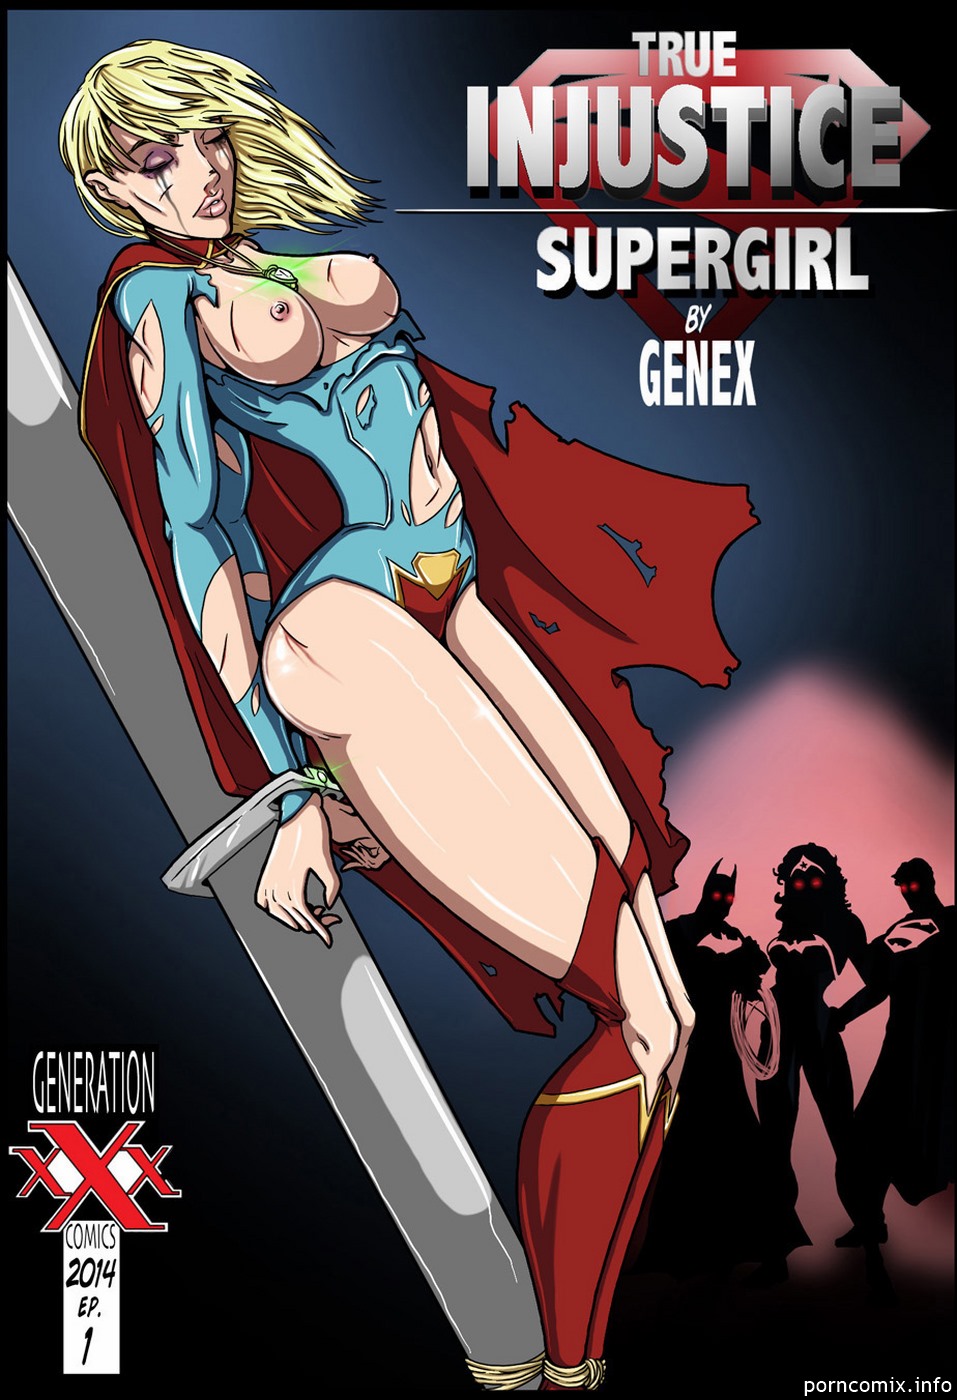 genex 真的 不公平 女超人